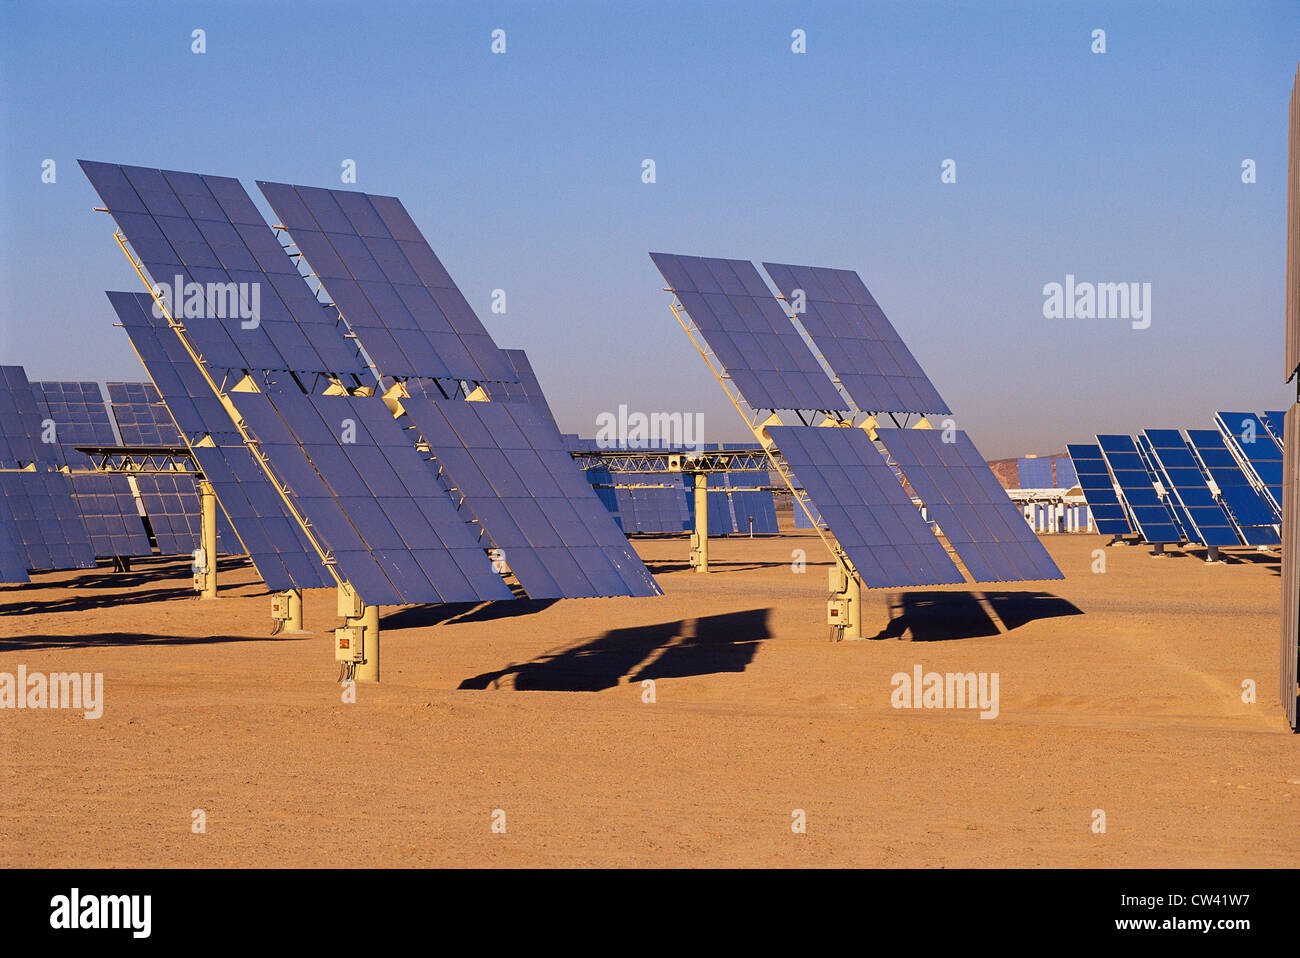 Dies ist eine Solaranlage Solar 2 genannt. Dies wurde von Southern California Edison aktualisiert. Stockfoto